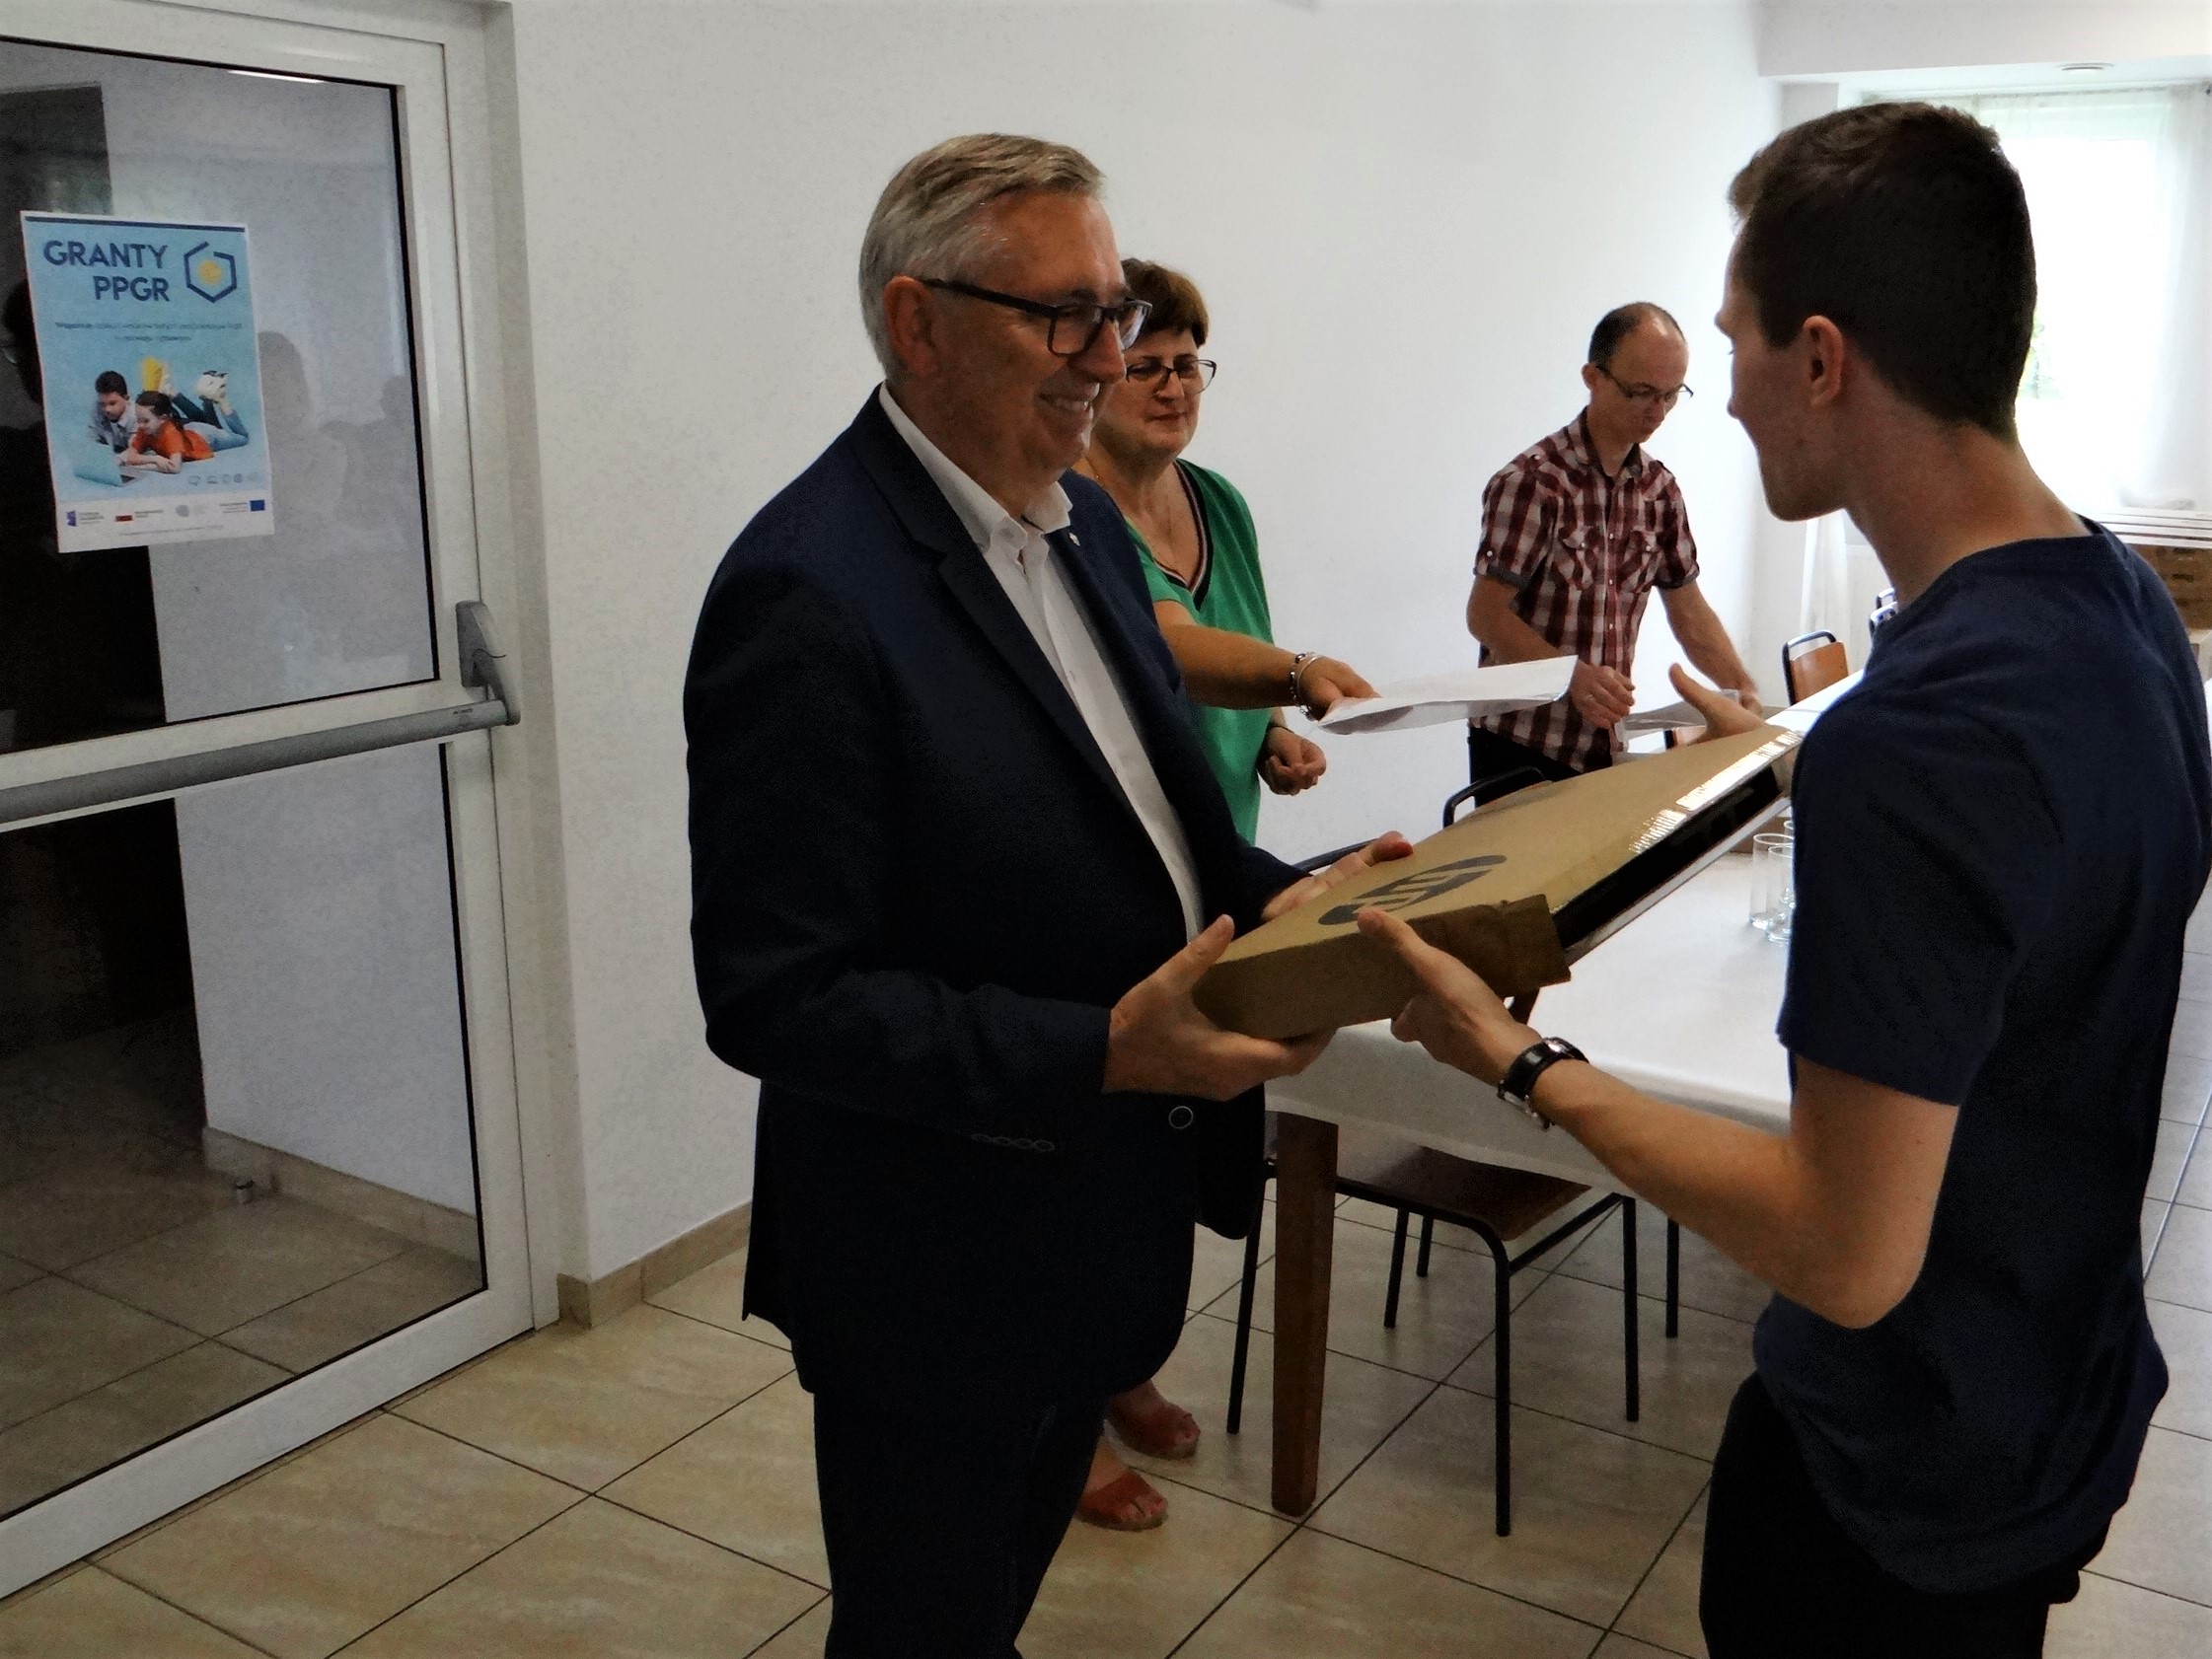 Wiceminister Stanisław Szwed przekazuje kolejnemu młodemu człowiekowi przenośny komputer. Wewnątrz budynku młodszy mężczyzna odbiera z rąk starszego opakowanie z laptopem w środku